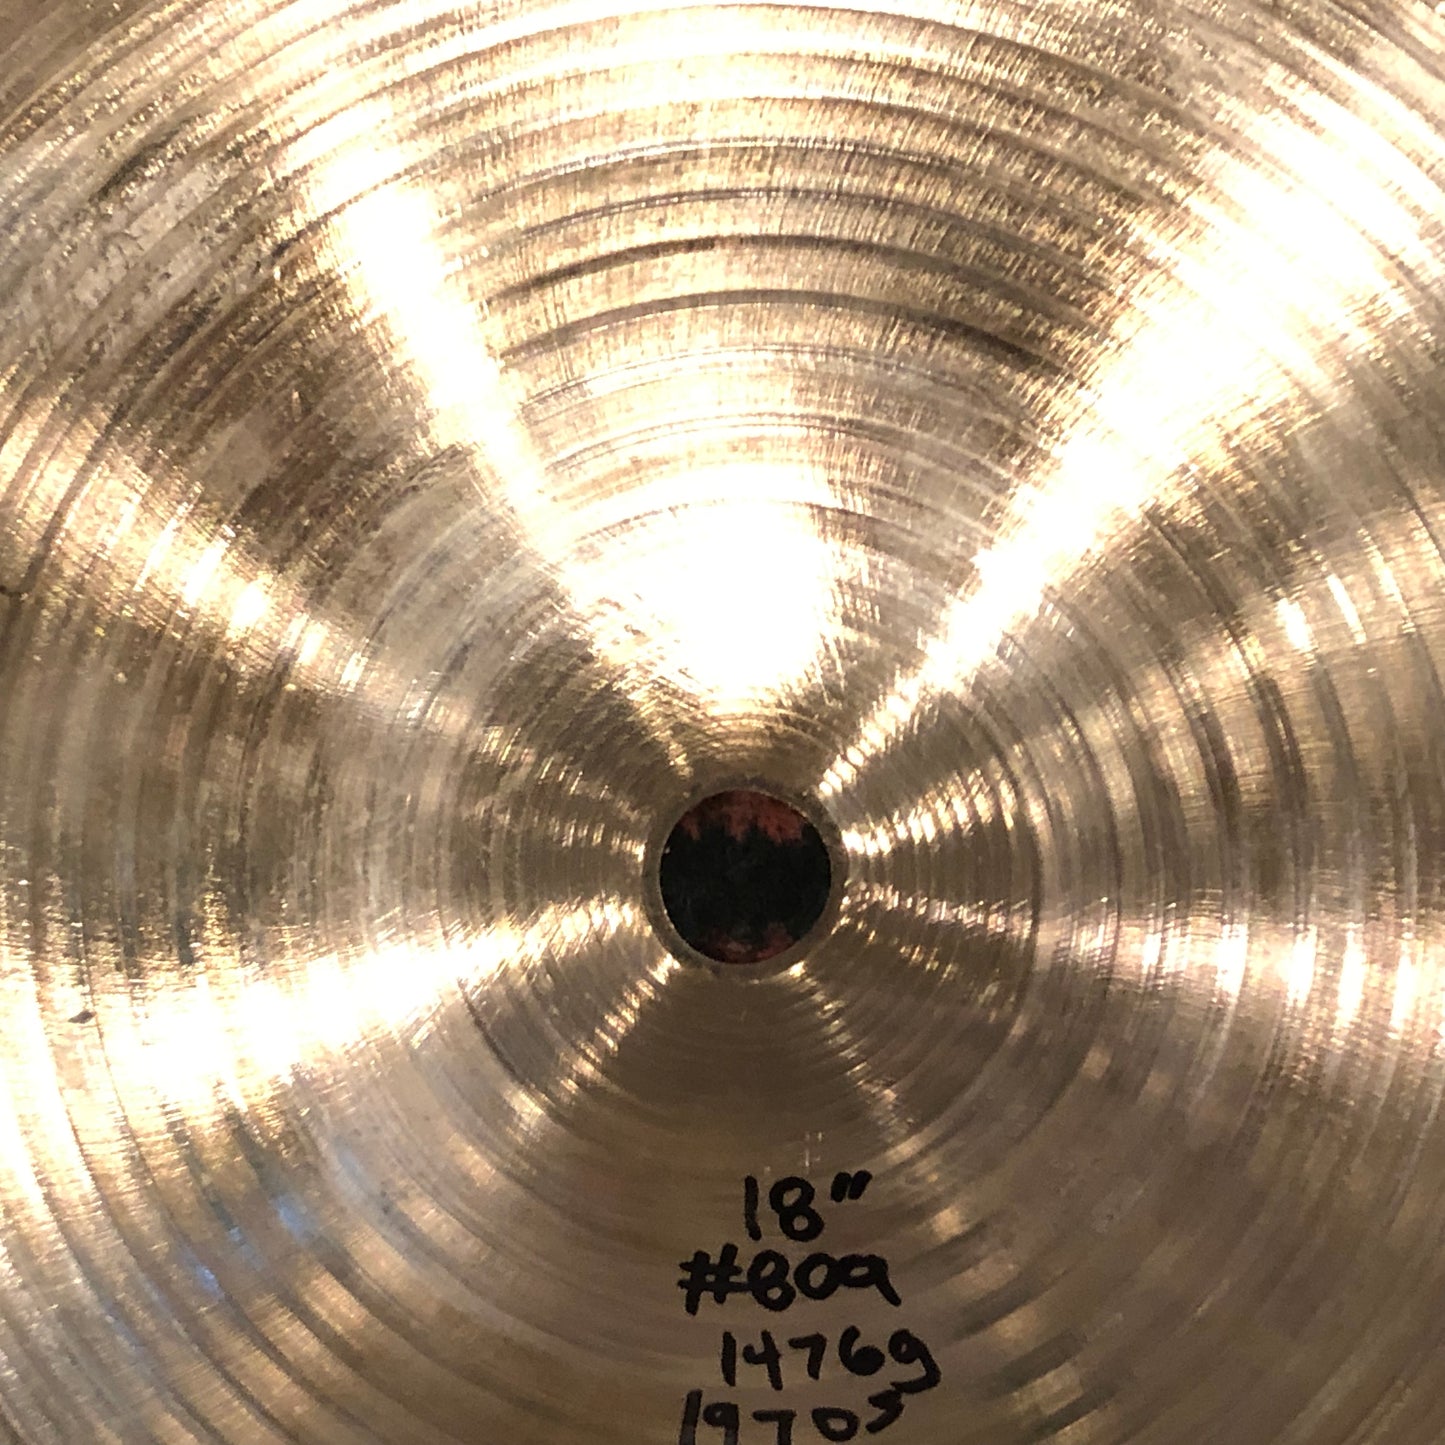 18" Zildjian A 1970s Crash Ride Cymbal 1476g #809